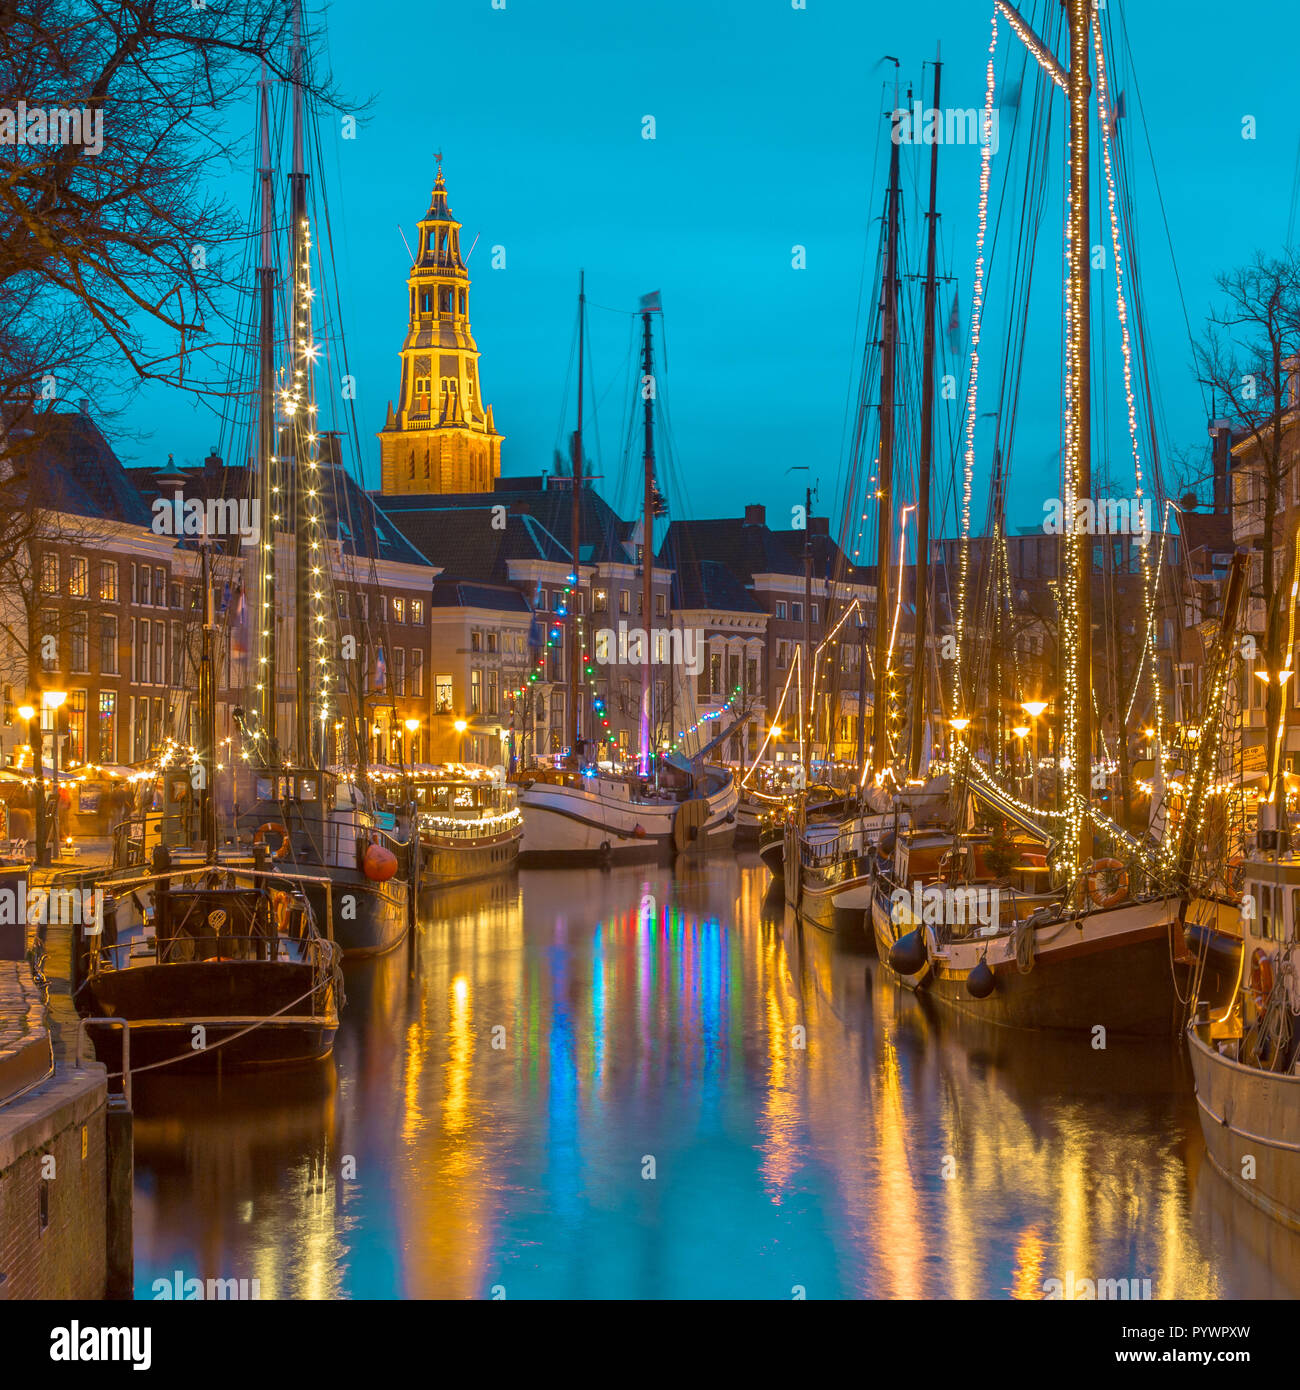 Les bateaux à voile historique amarré au quai sur le festival annuel de Winterwelvaart autour de Noël. Revivre les temps anciens dans la partie historique de Groningen Banque D'Images